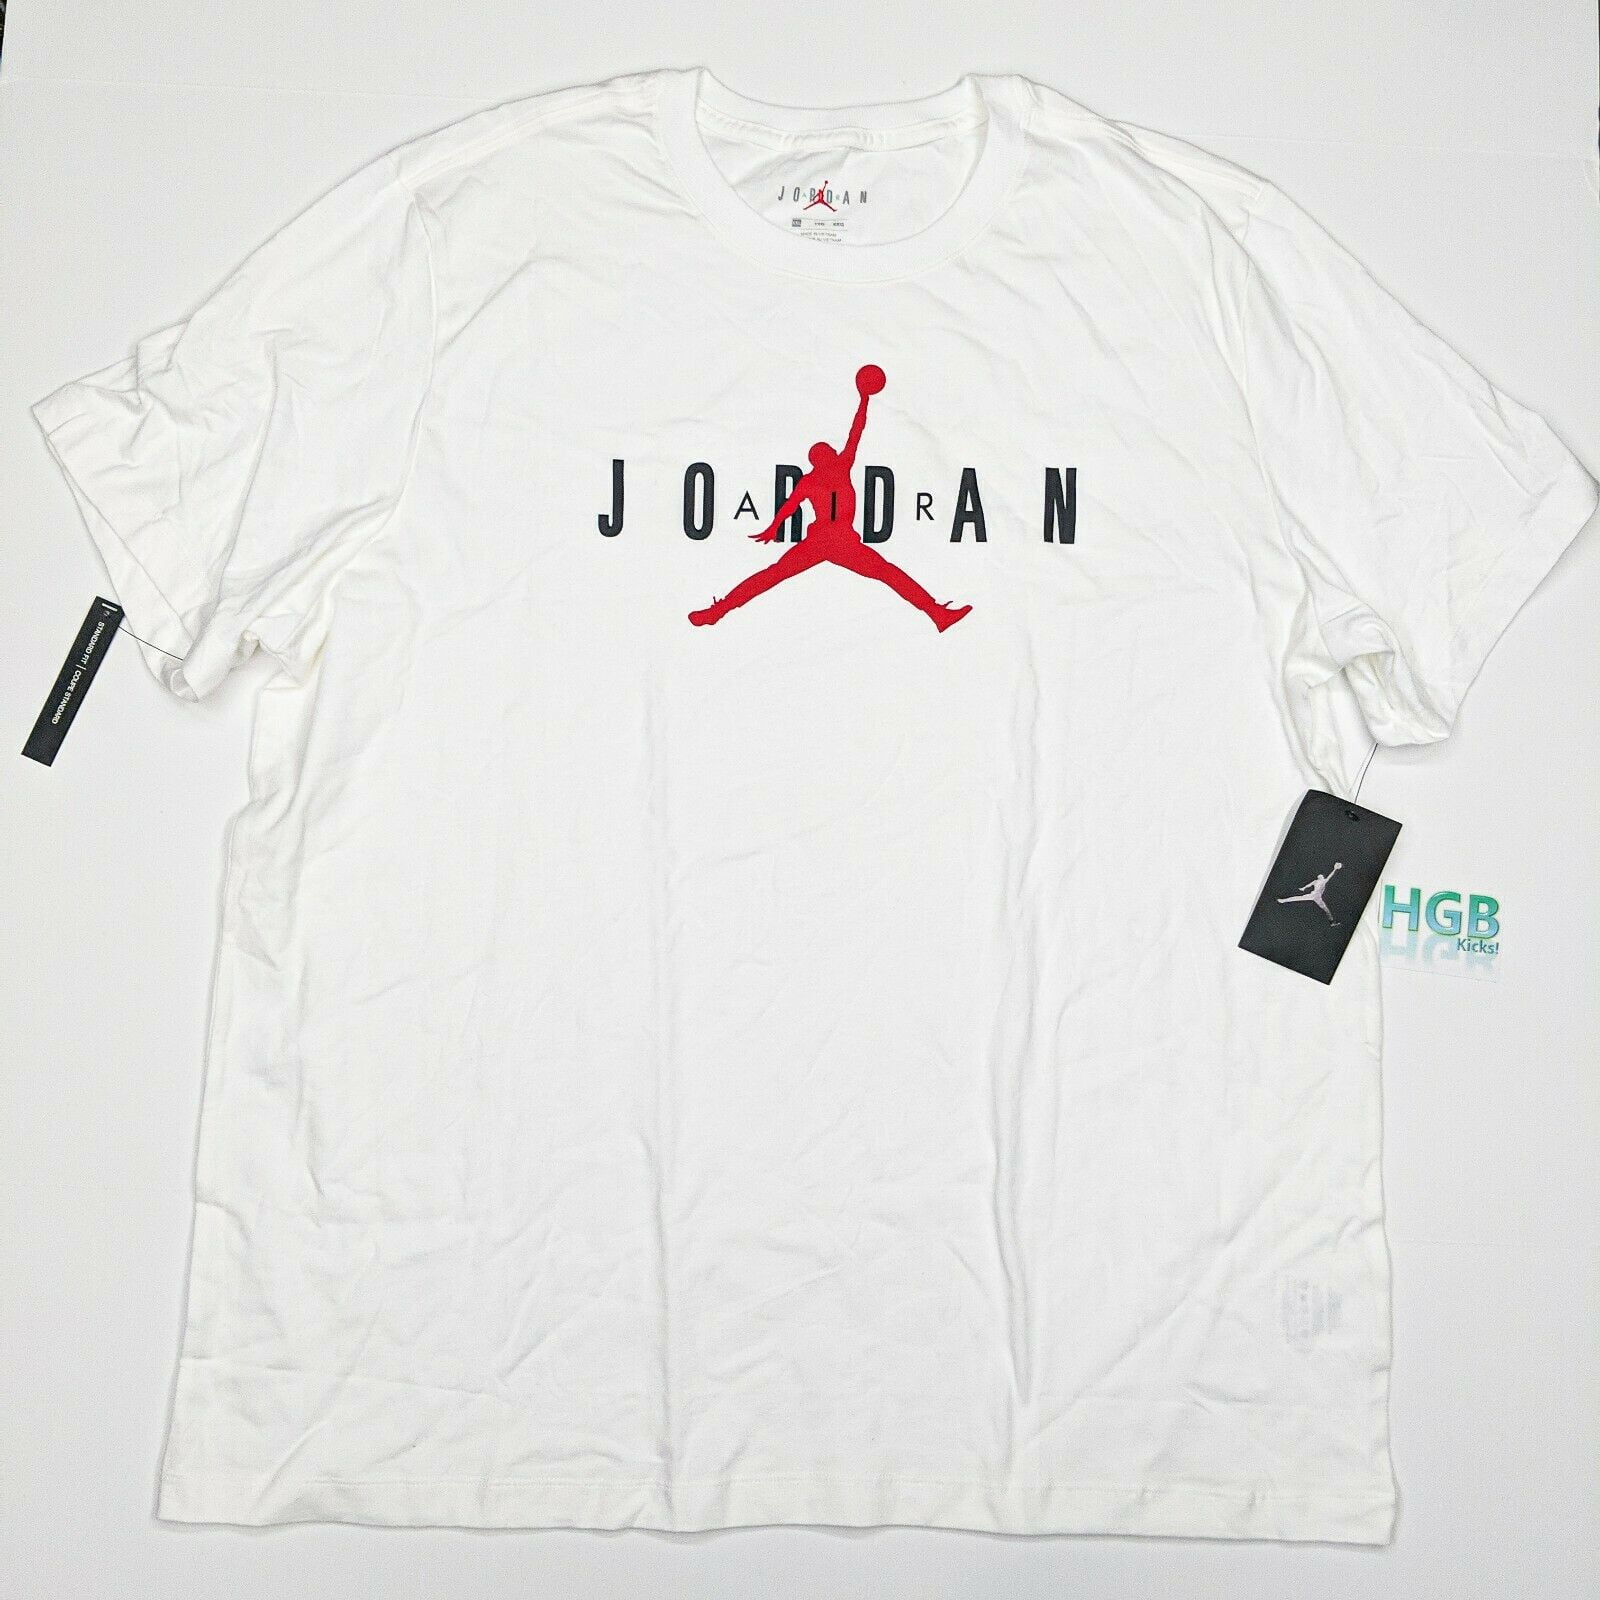 grey white and red jordan shirt